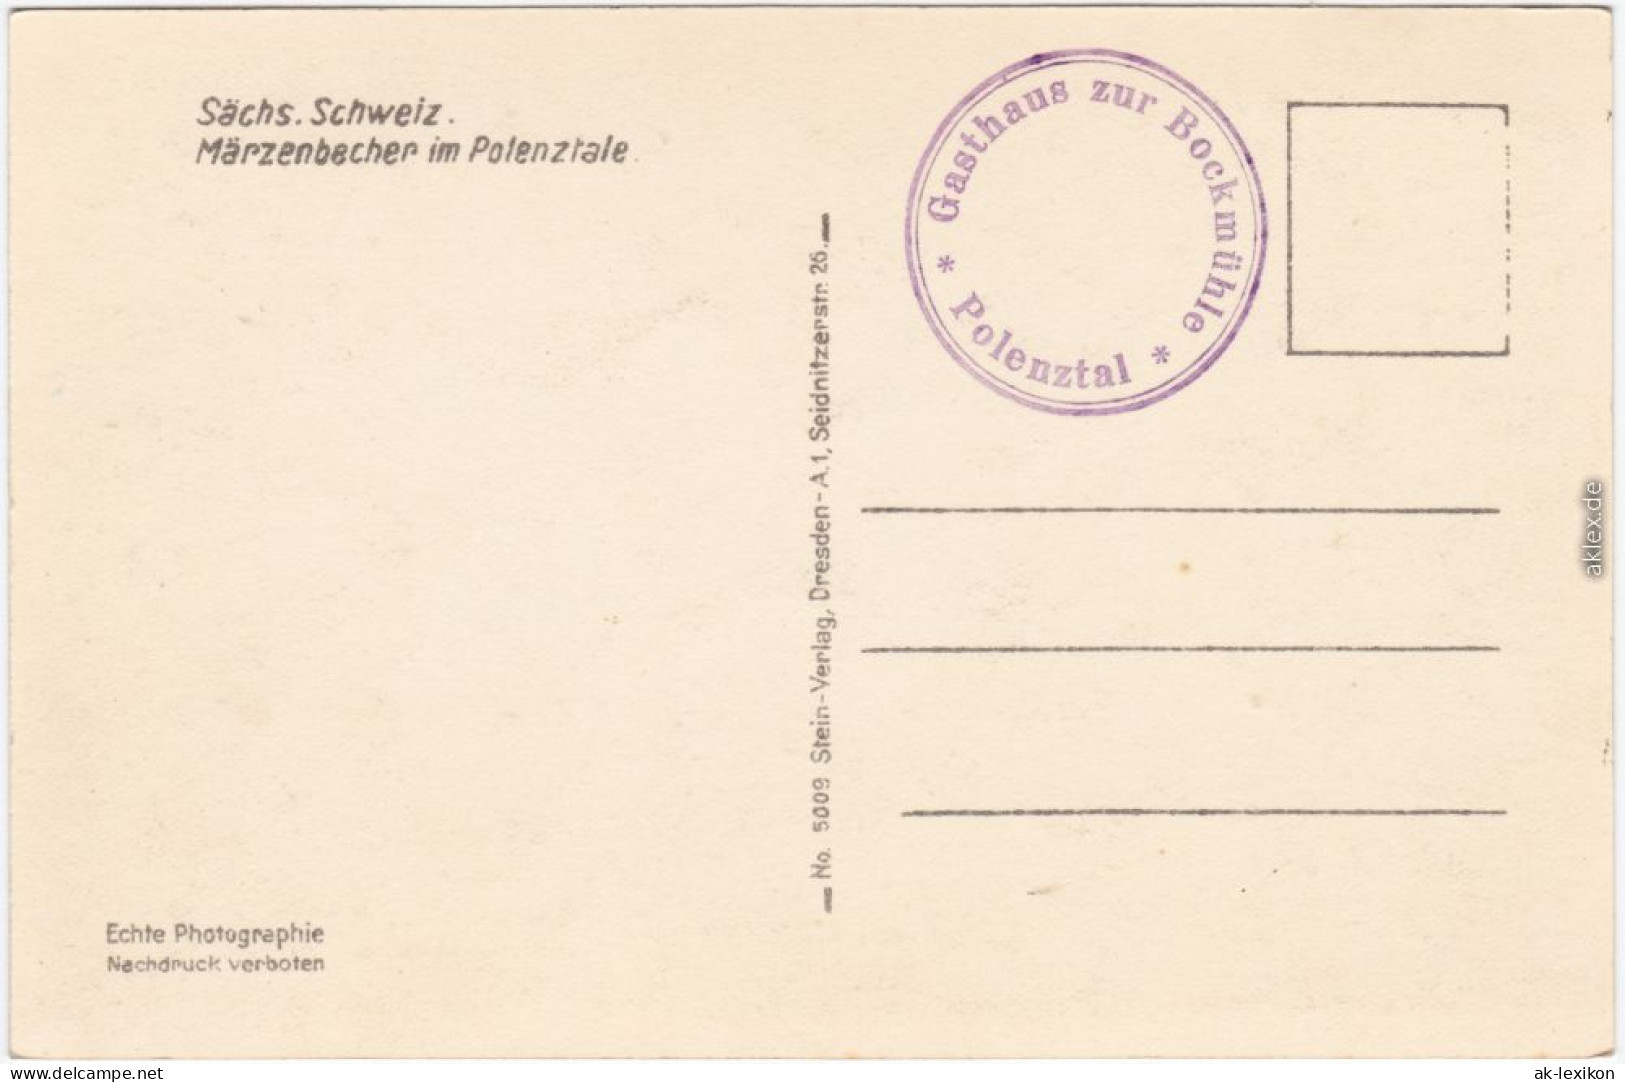 Hohnstein (Sächs. Schweiz) Märzenbecher Im Polenztal - Sächsische Schweiz  1932 - Hohnstein (Sächs. Schweiz)